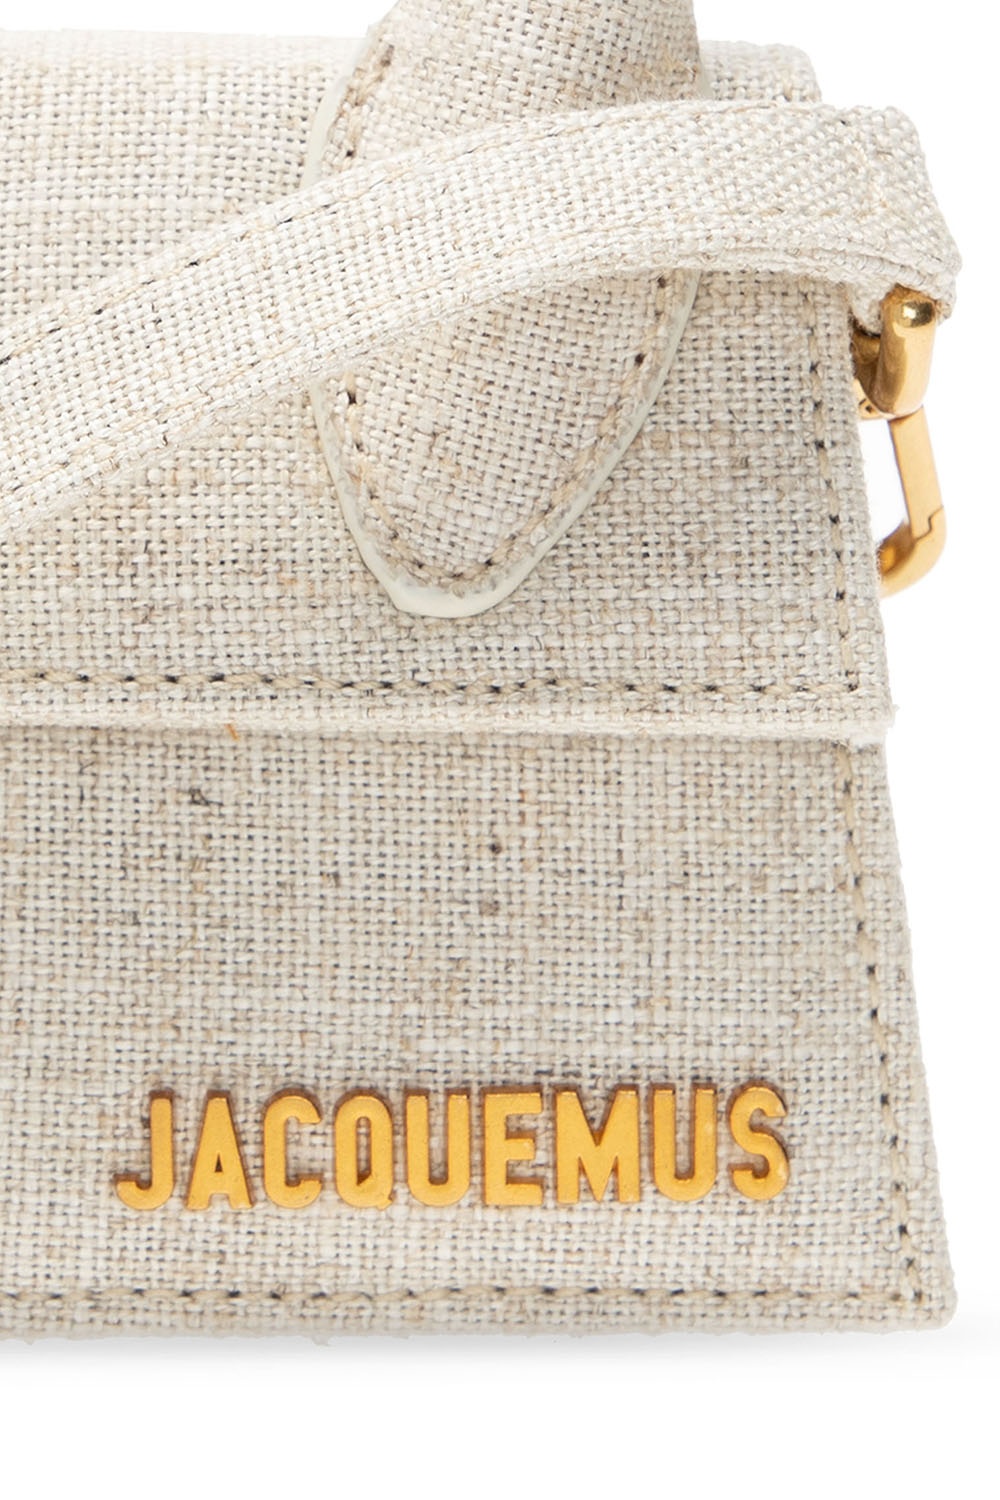 Louis Vuitton Montsouris Backpack - Vitkac shop online